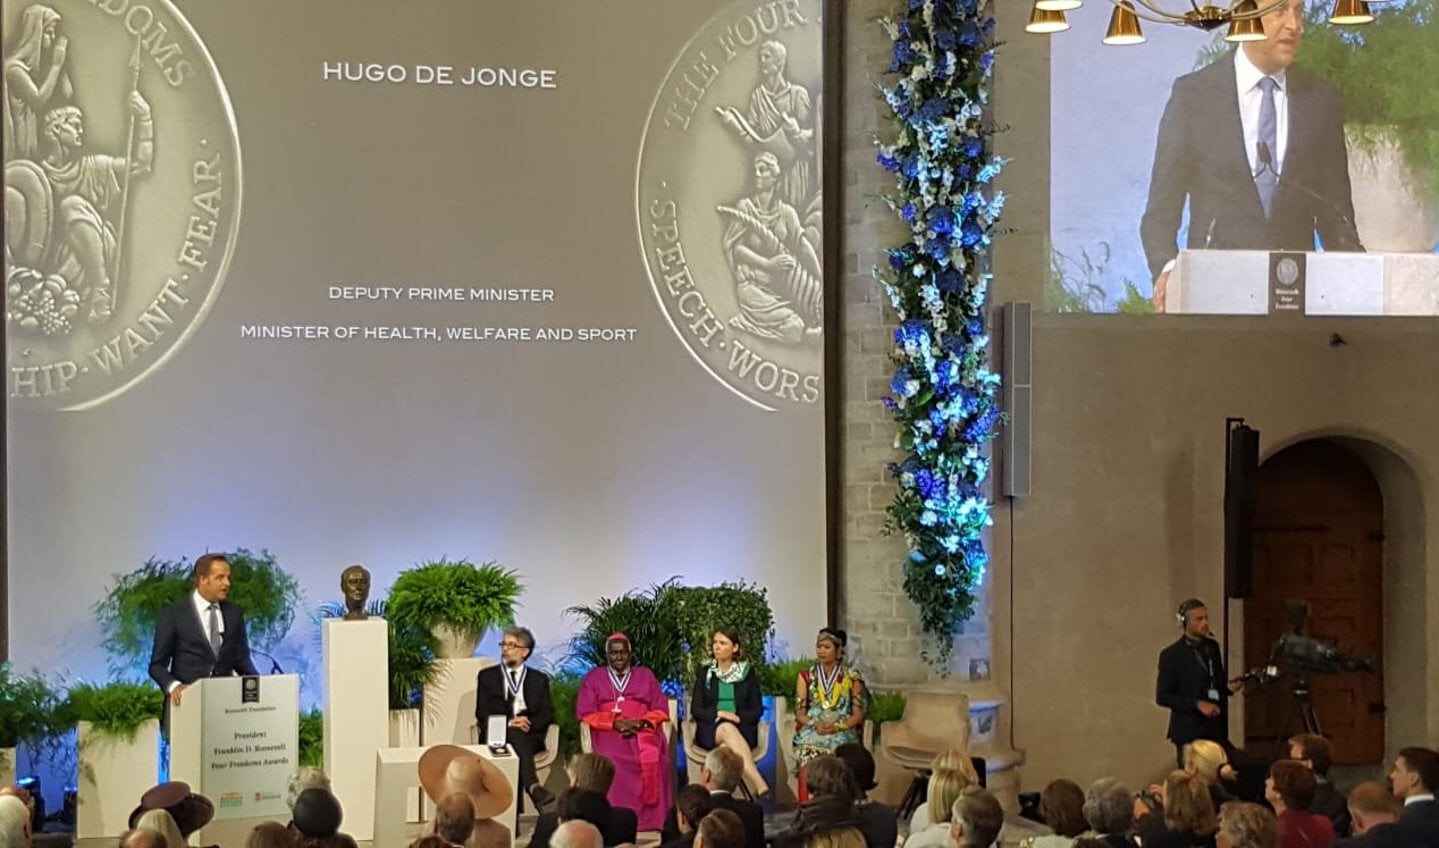 Minister Hugo de Jonge presenteerde een award voor de totstandkoming van het klimaatakkoord van Parijs.